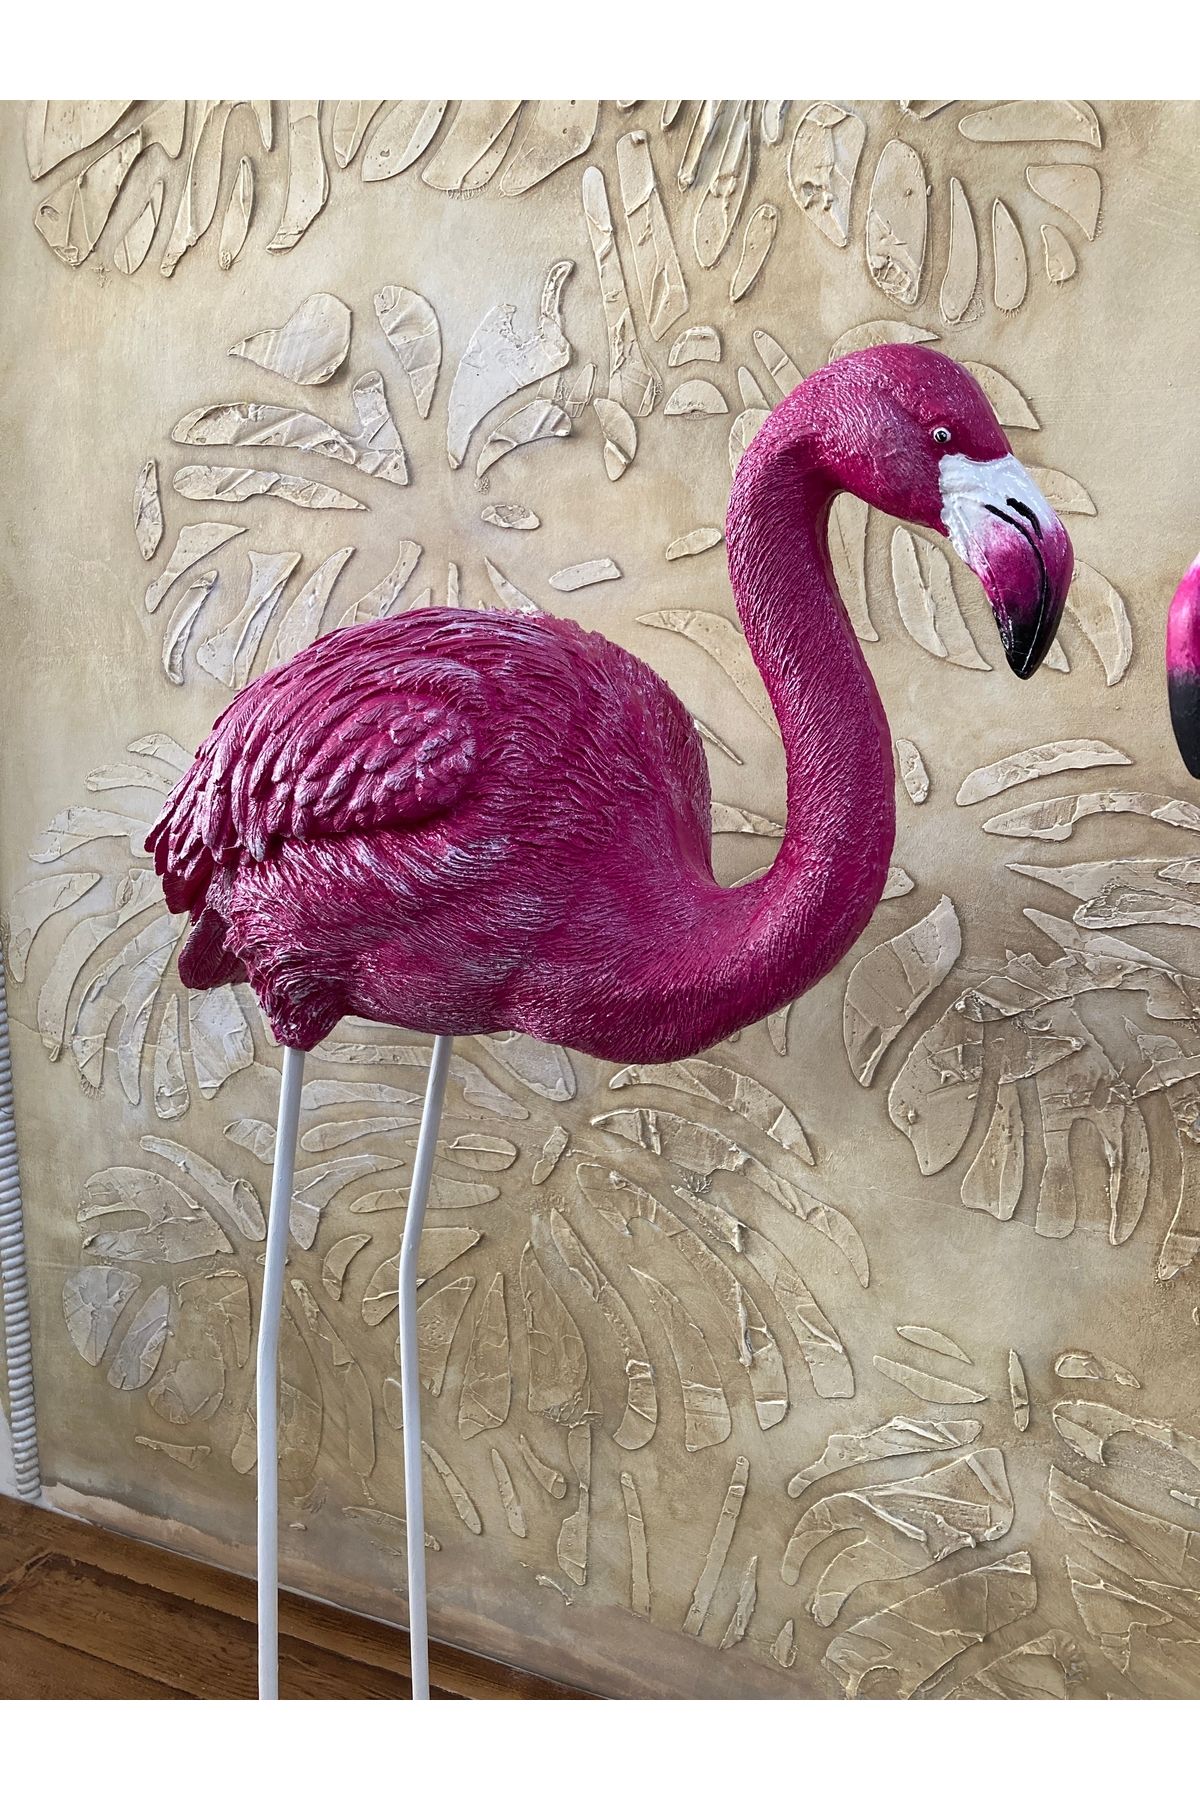 wowocraft Flamingo Eğik Başlı Bahçe Objesi